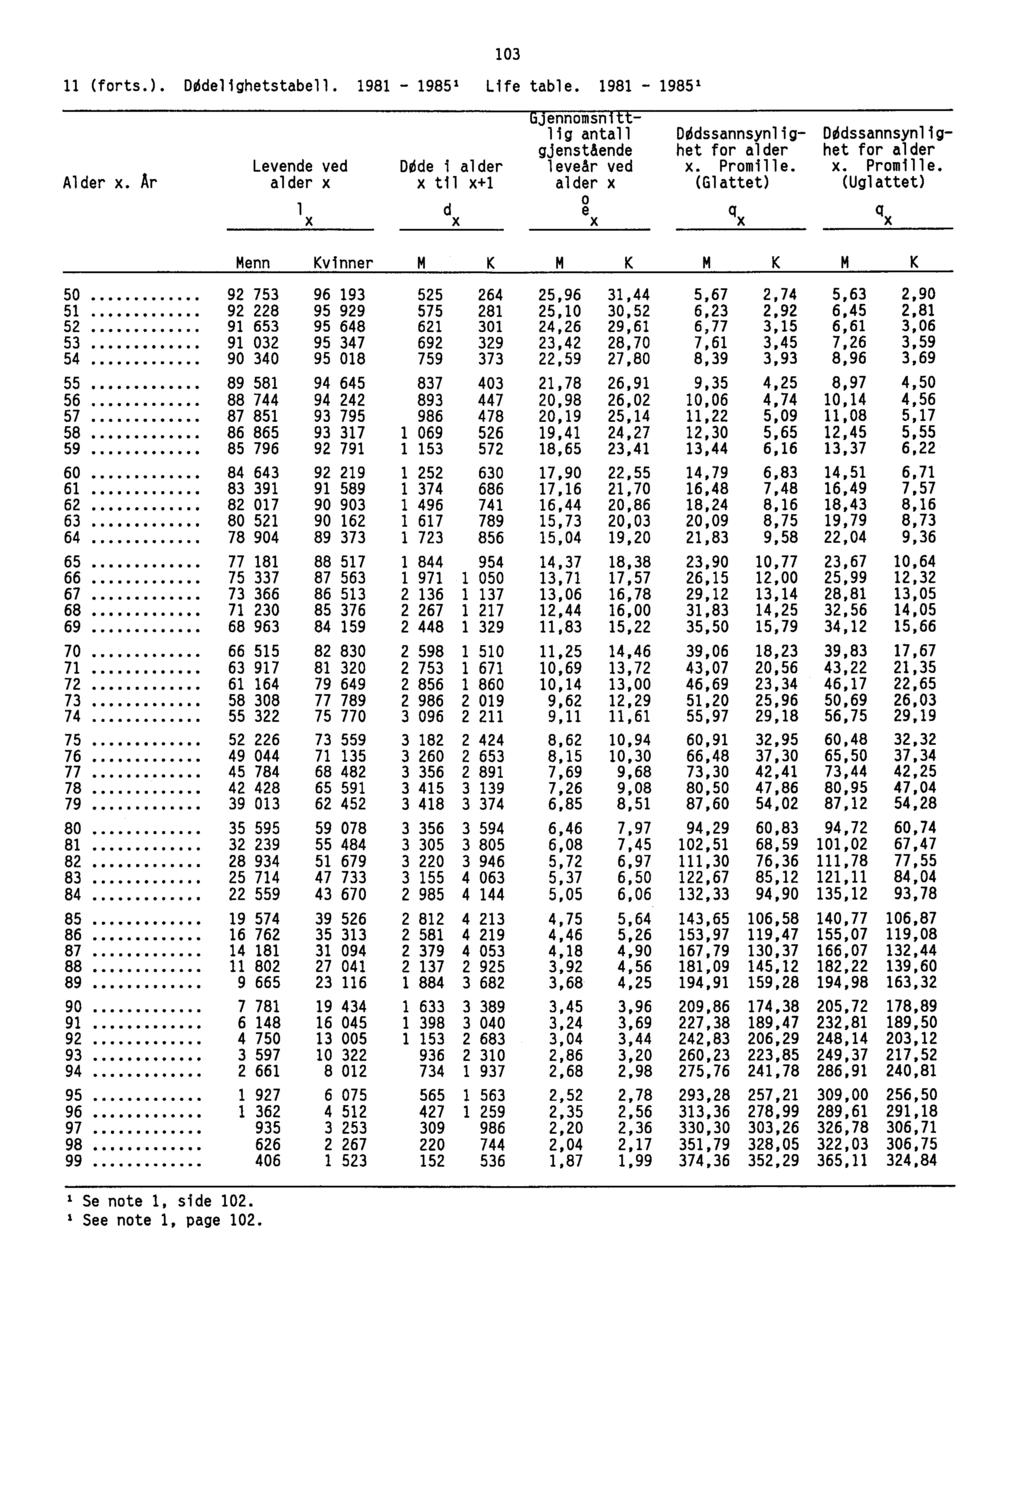 11 (forts.). DØdel ighetstabel 1. 1981 -- 1985= Life table. 1981 -- 1985 1 103 Alder x.